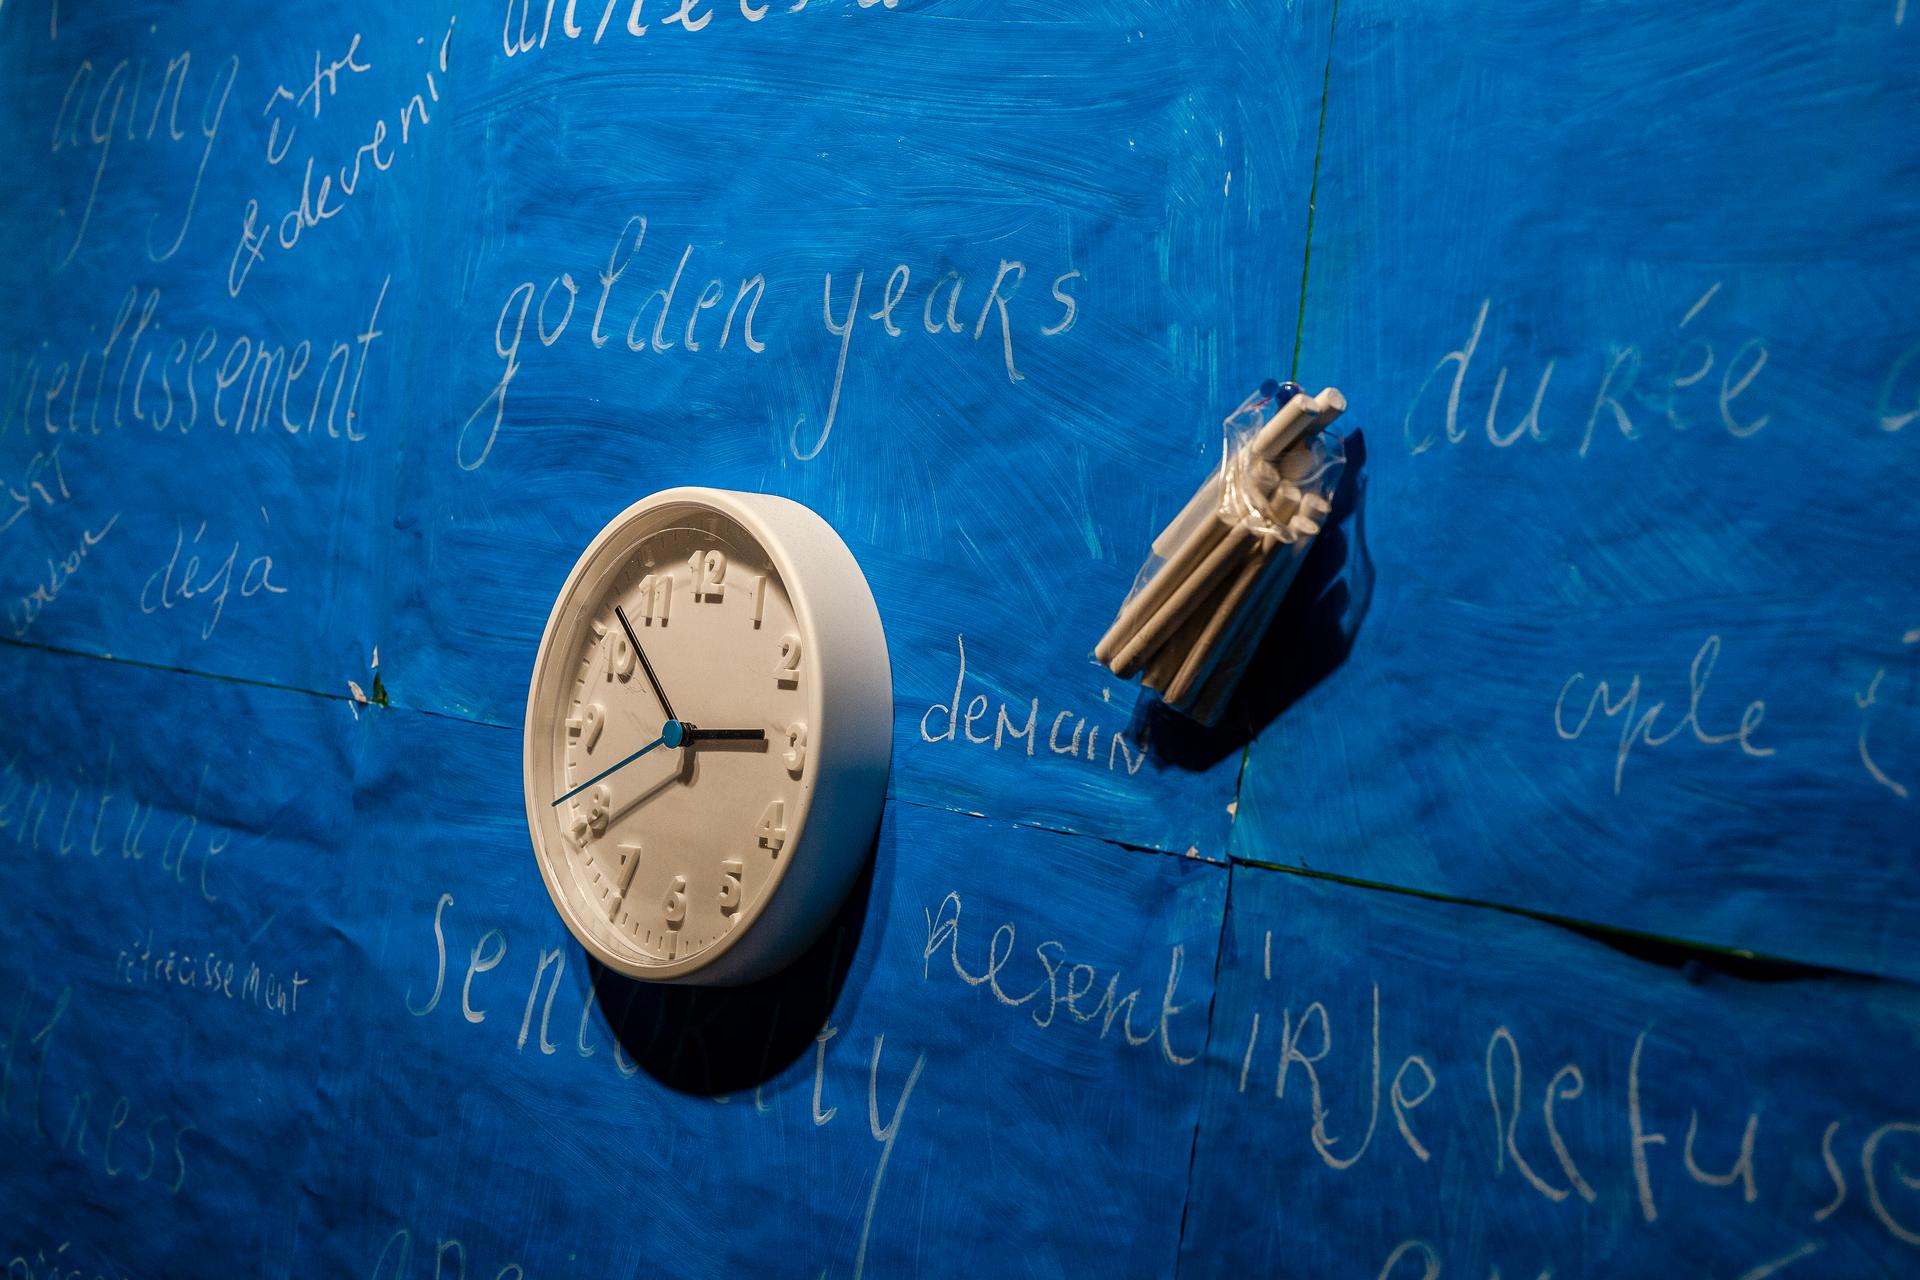 The classroom, an interactive installation de Jacqueline van de Geer